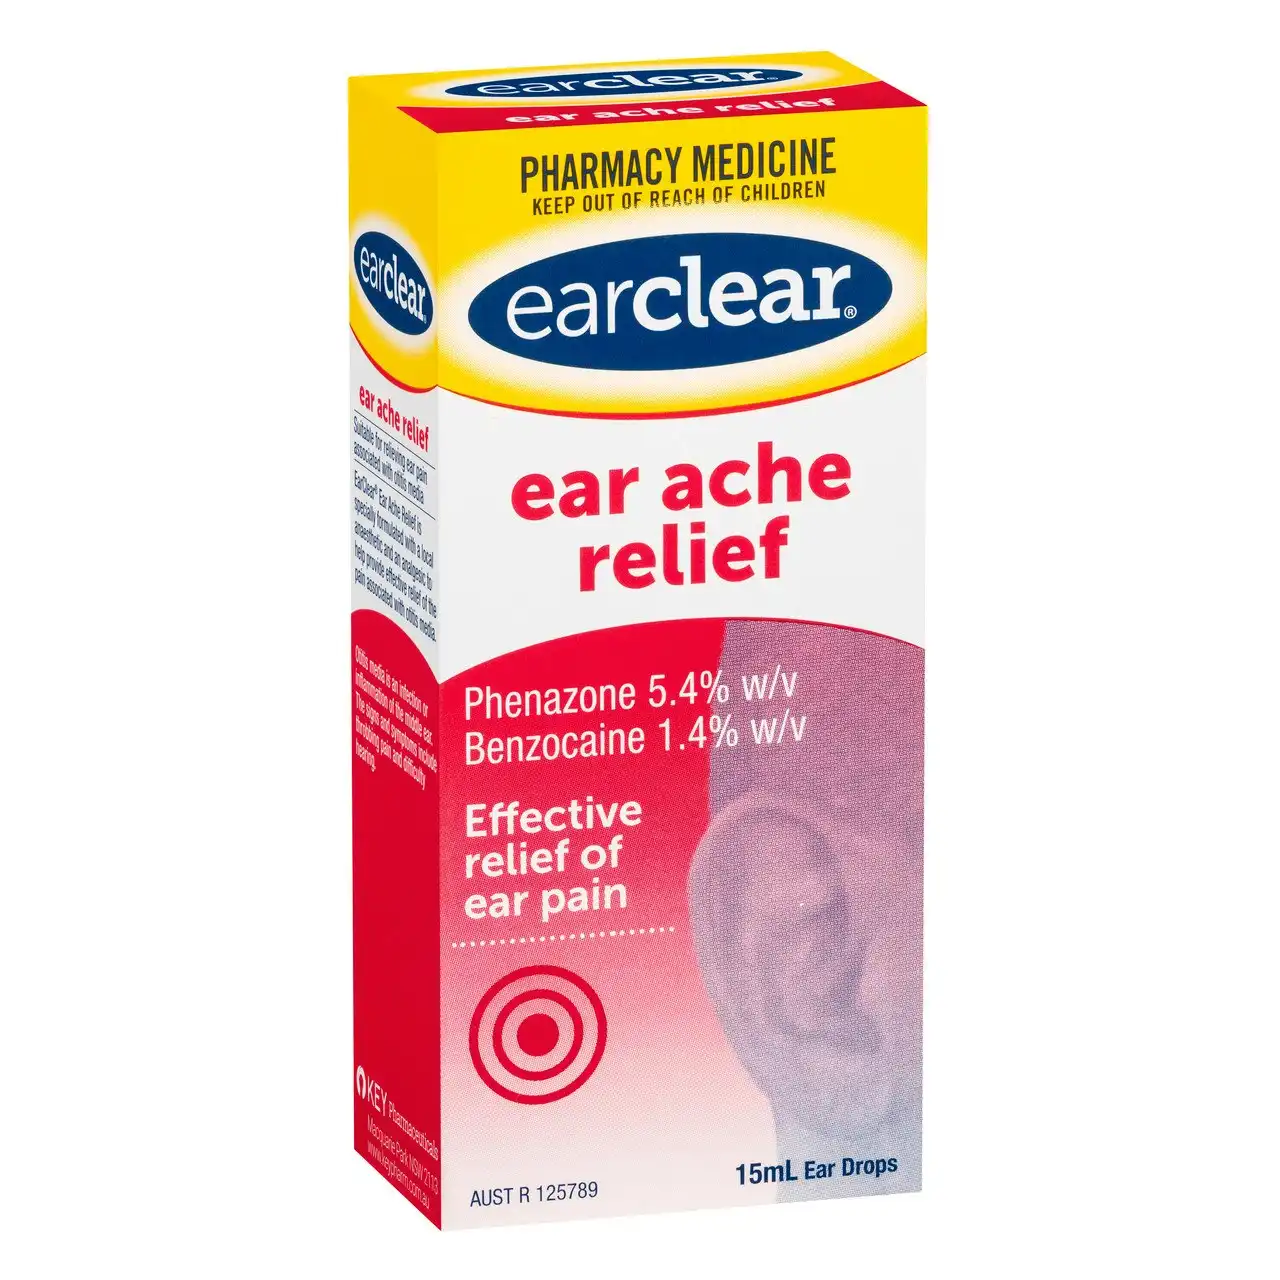 earclear ear ache relief 15mL